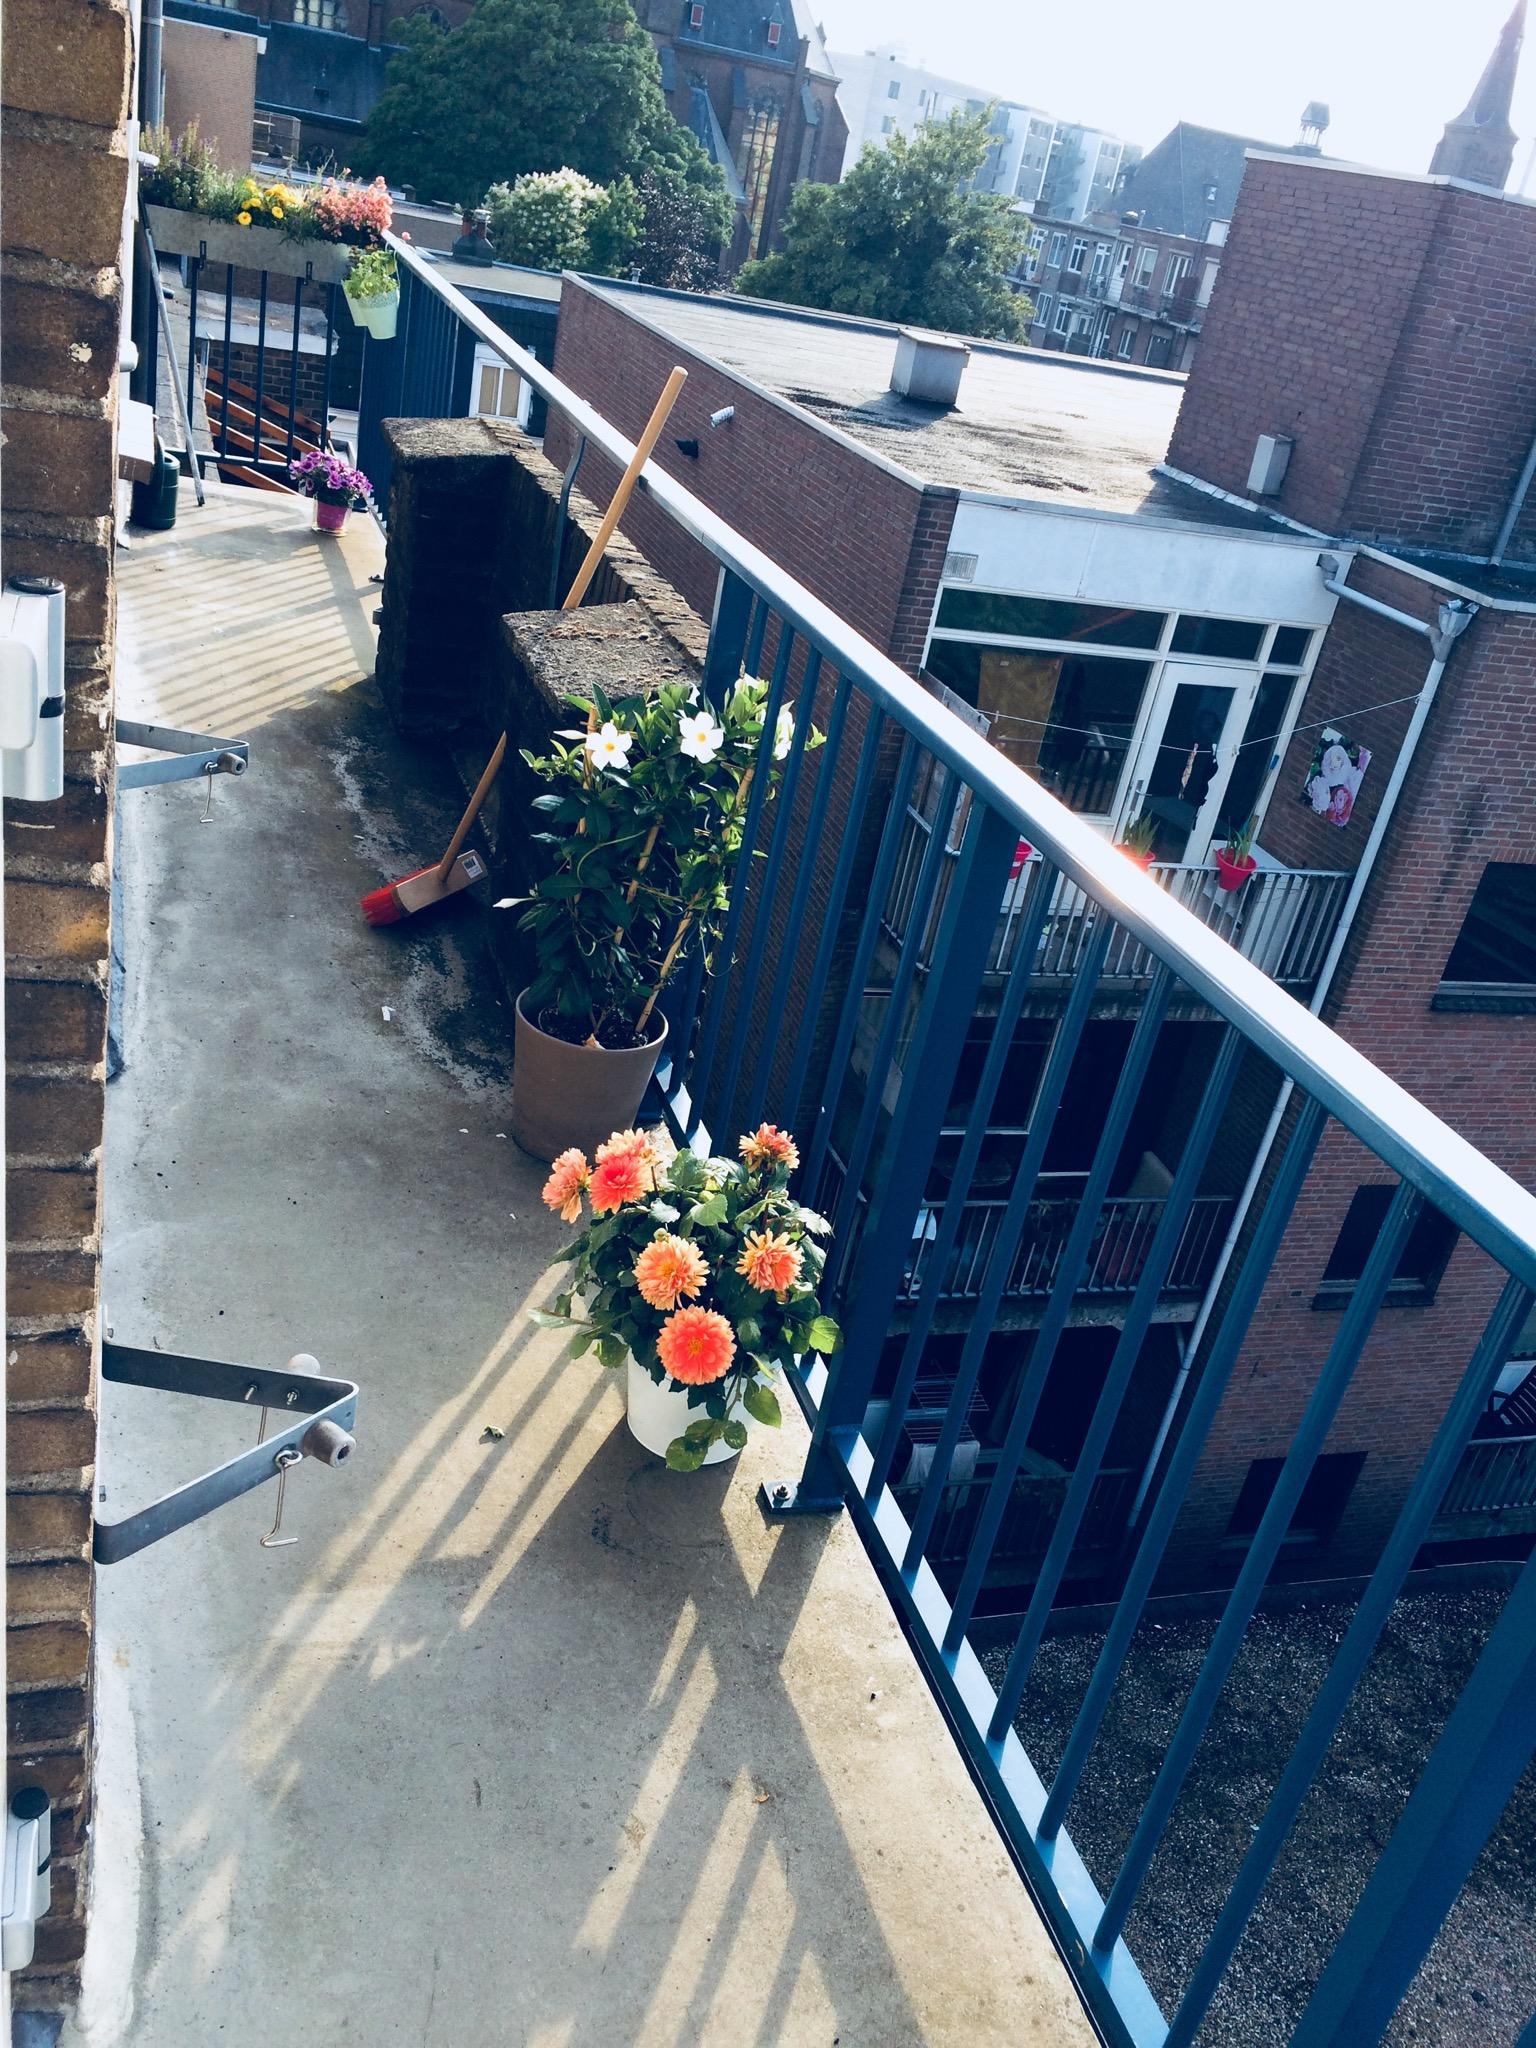 Mädelswochenende bei einer Freundin in Holland - schaut euch ihren Balkon an 😳😍 #balkon #holland #wow #endloslang